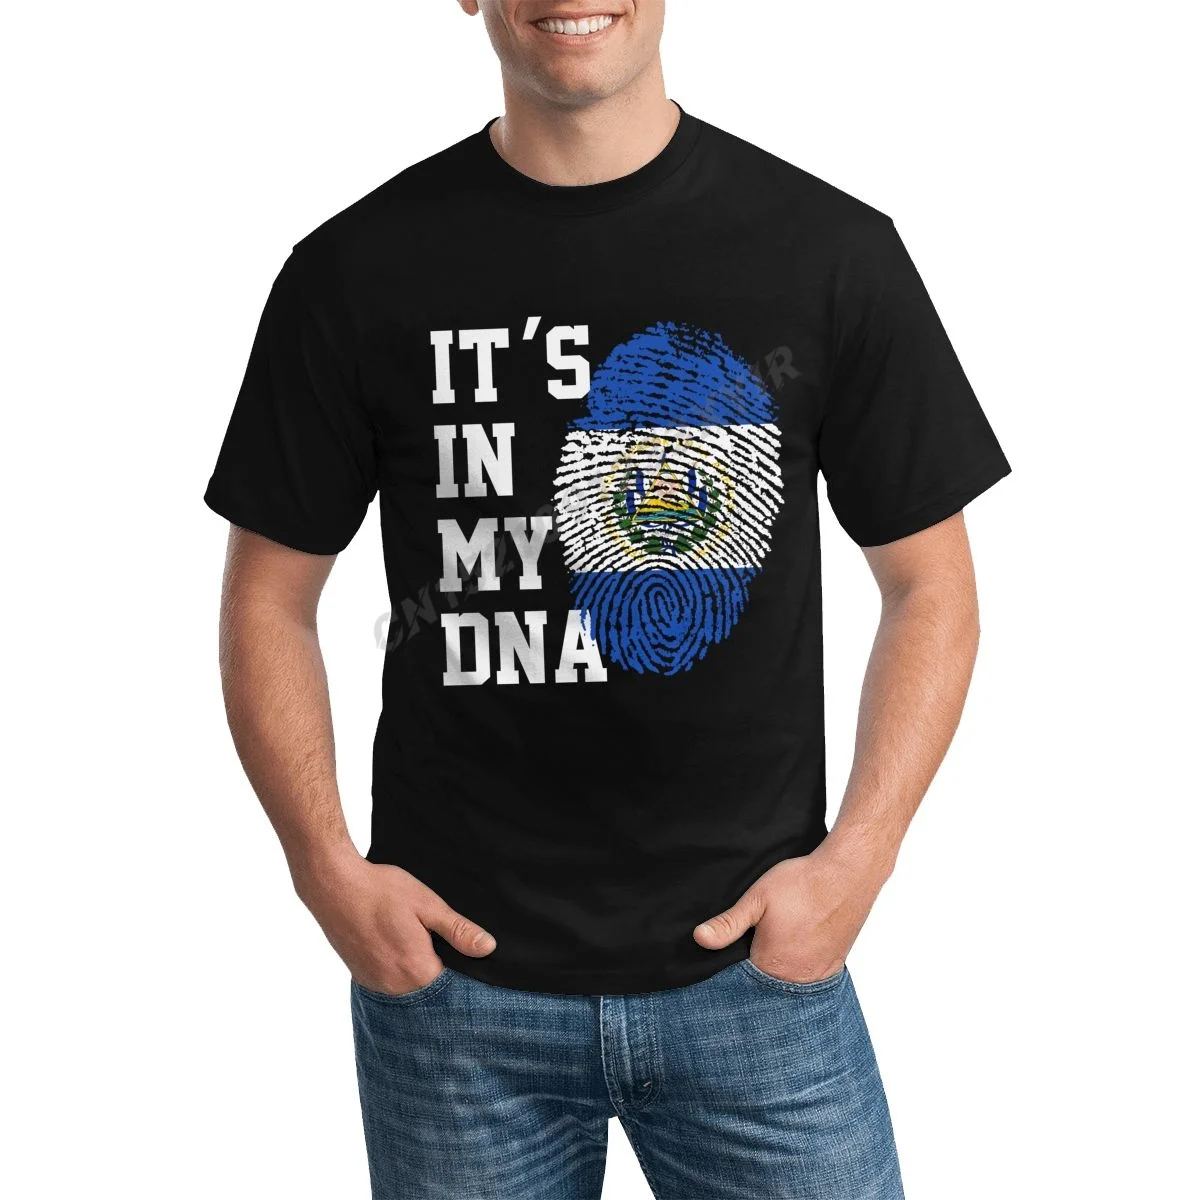 

Мужская футболка с надписью «It's IN MY DNA», фанаты Сальвадора, футболка, Мужская футболка, футболка в стиле хип-хоп, искусственный хлопок 100%